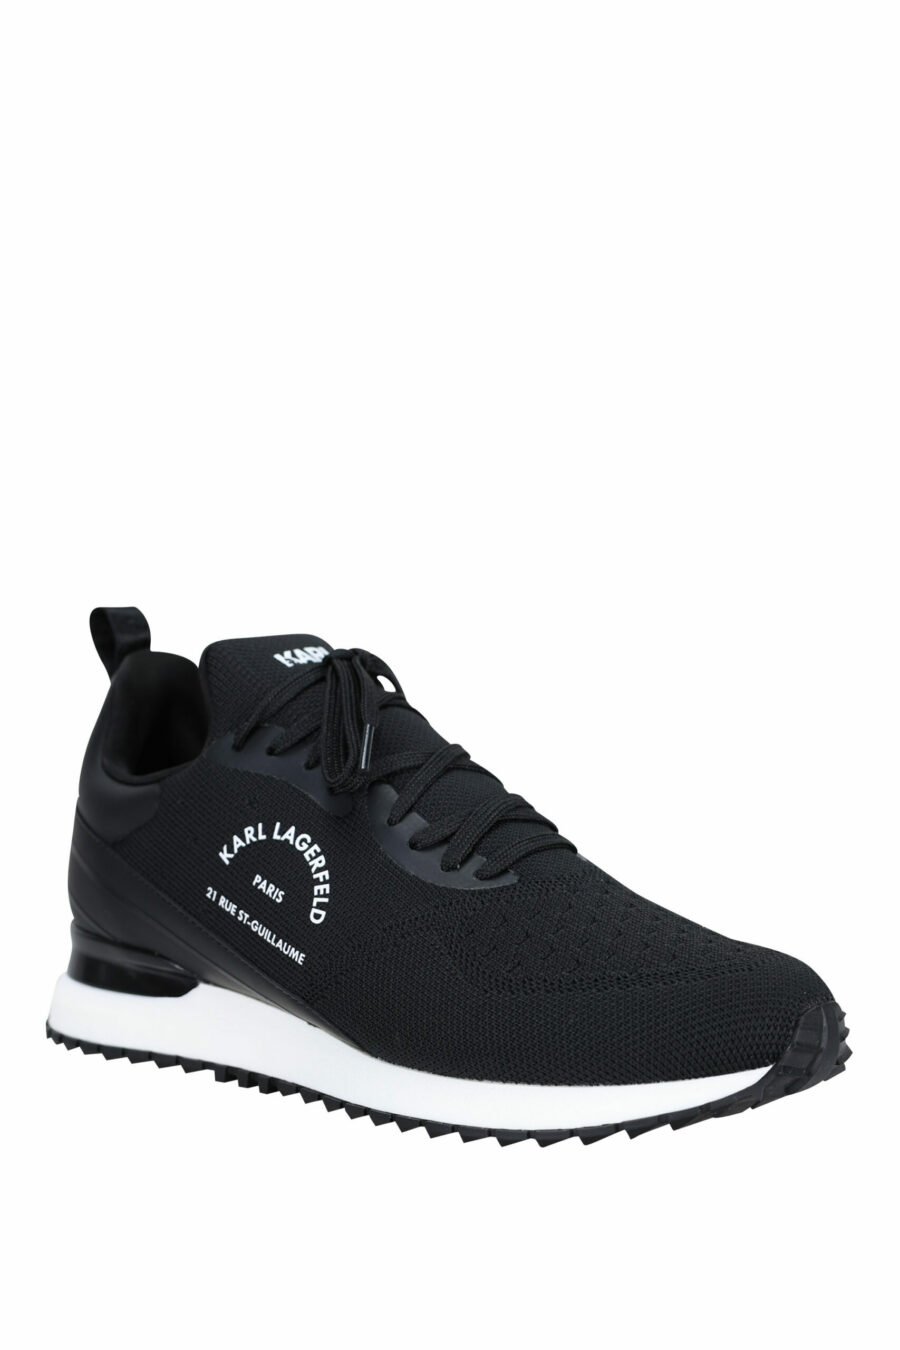 Schwarze "velocitor" Schuhe mit weißem "rue st guillaume" Logo - 5059529326370 1 skaliert